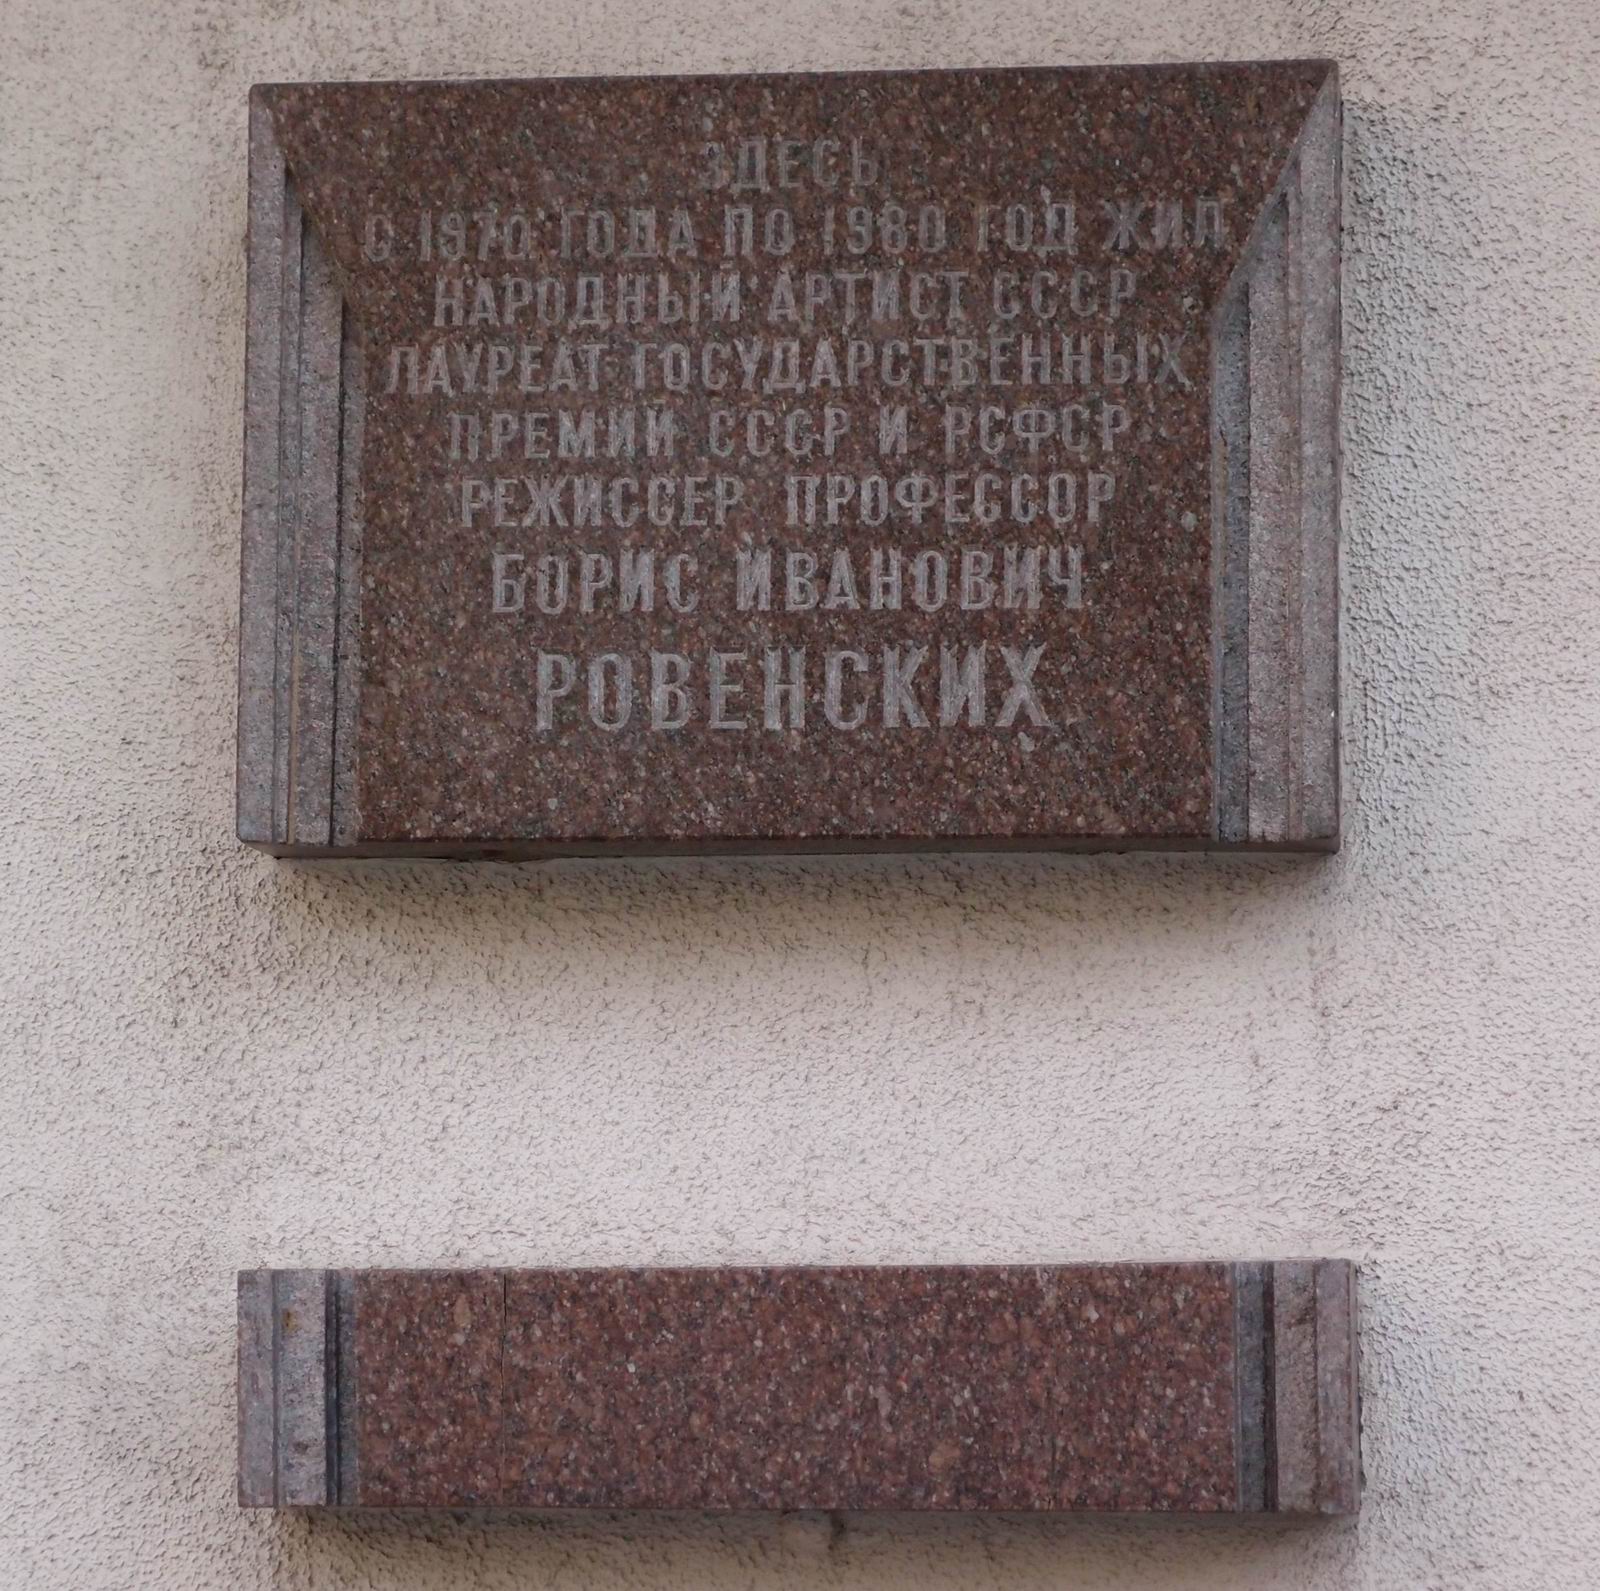 Мемориальная доска Ровенских Б.И. (1912–1980), арх. С.В.Клепиков, на Большой Бронной улице, дом 2/6, открыта 29.5.1981.